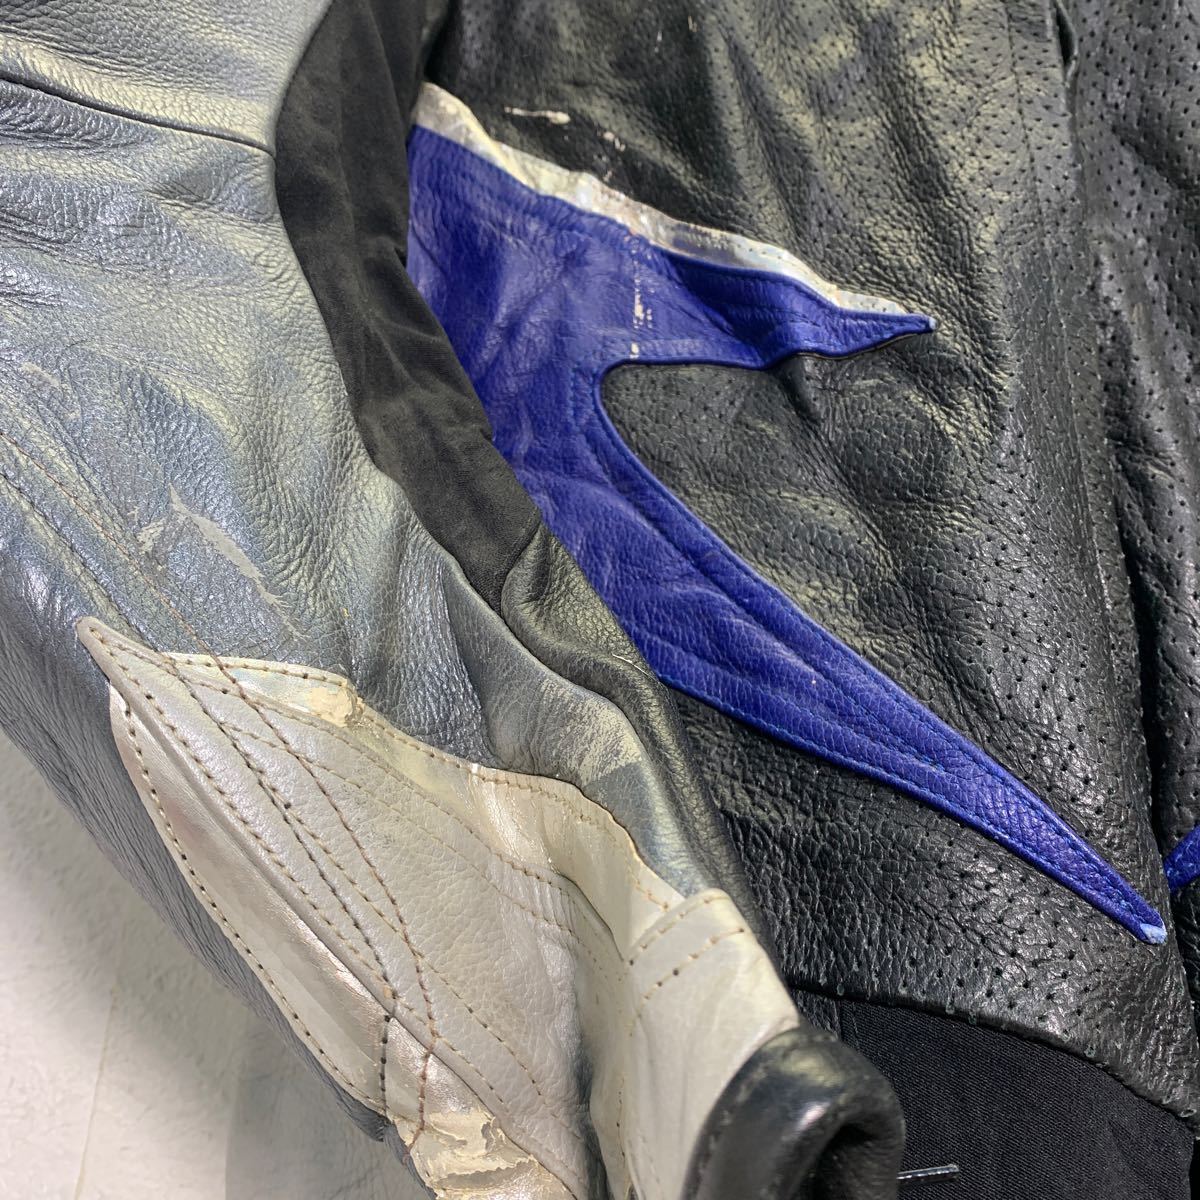 Searbok кожа костюм для гонок 46 черный голубой серебряный Biker костюм мотоцикл б/у одежда . America скупка a603-5223